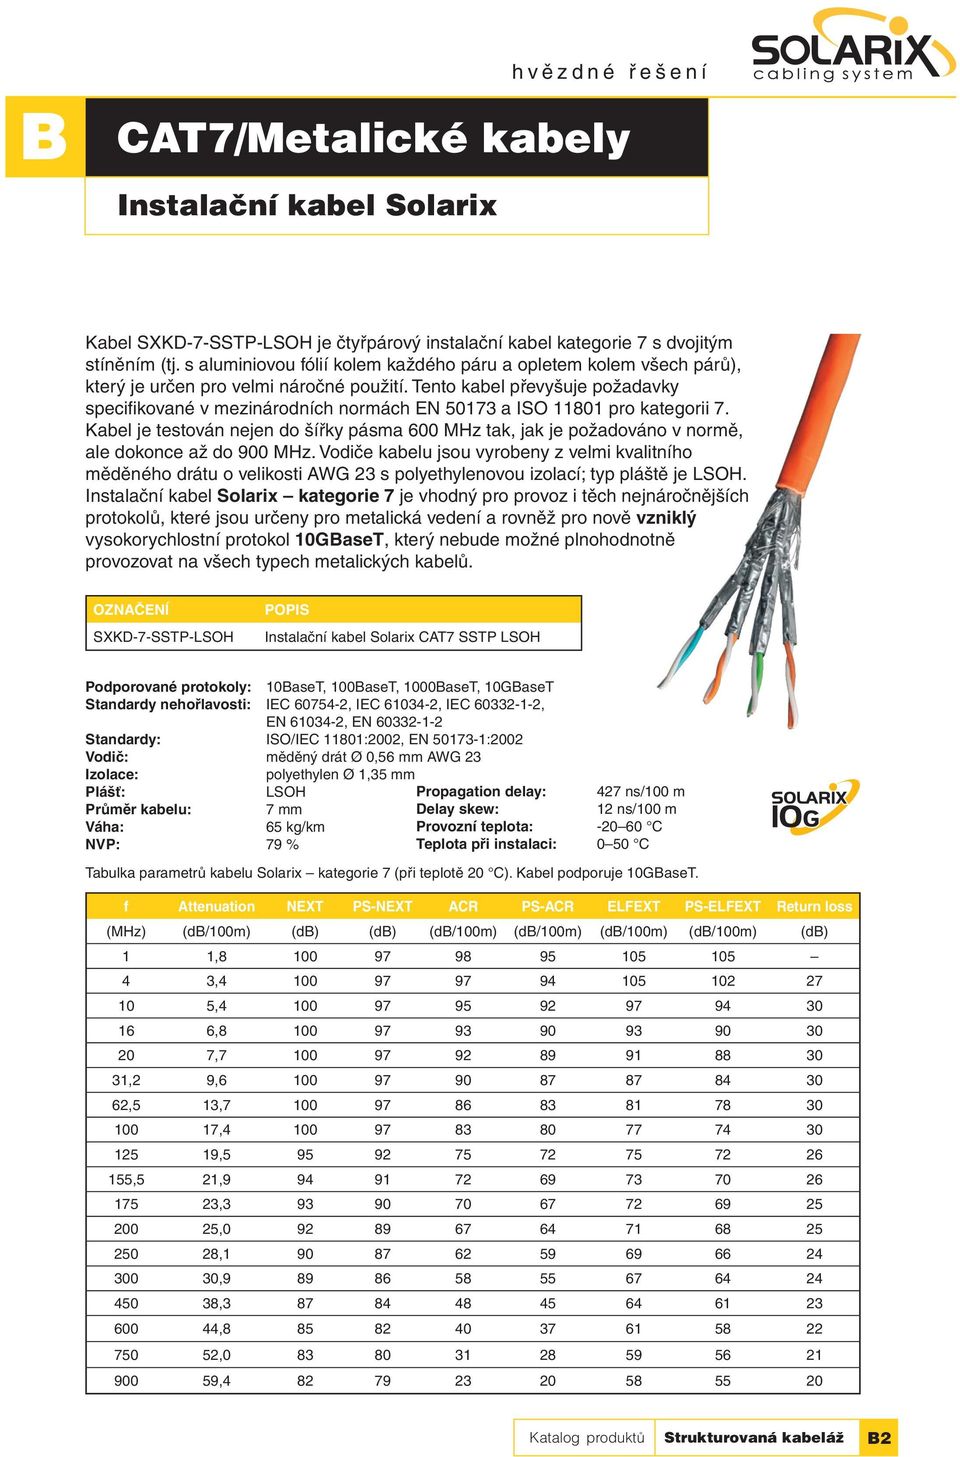 Tento kabel převyšuje požadavky specifi kované v mezinárodních normách EN 50173 a ISO 11801 pro kategorii 7.